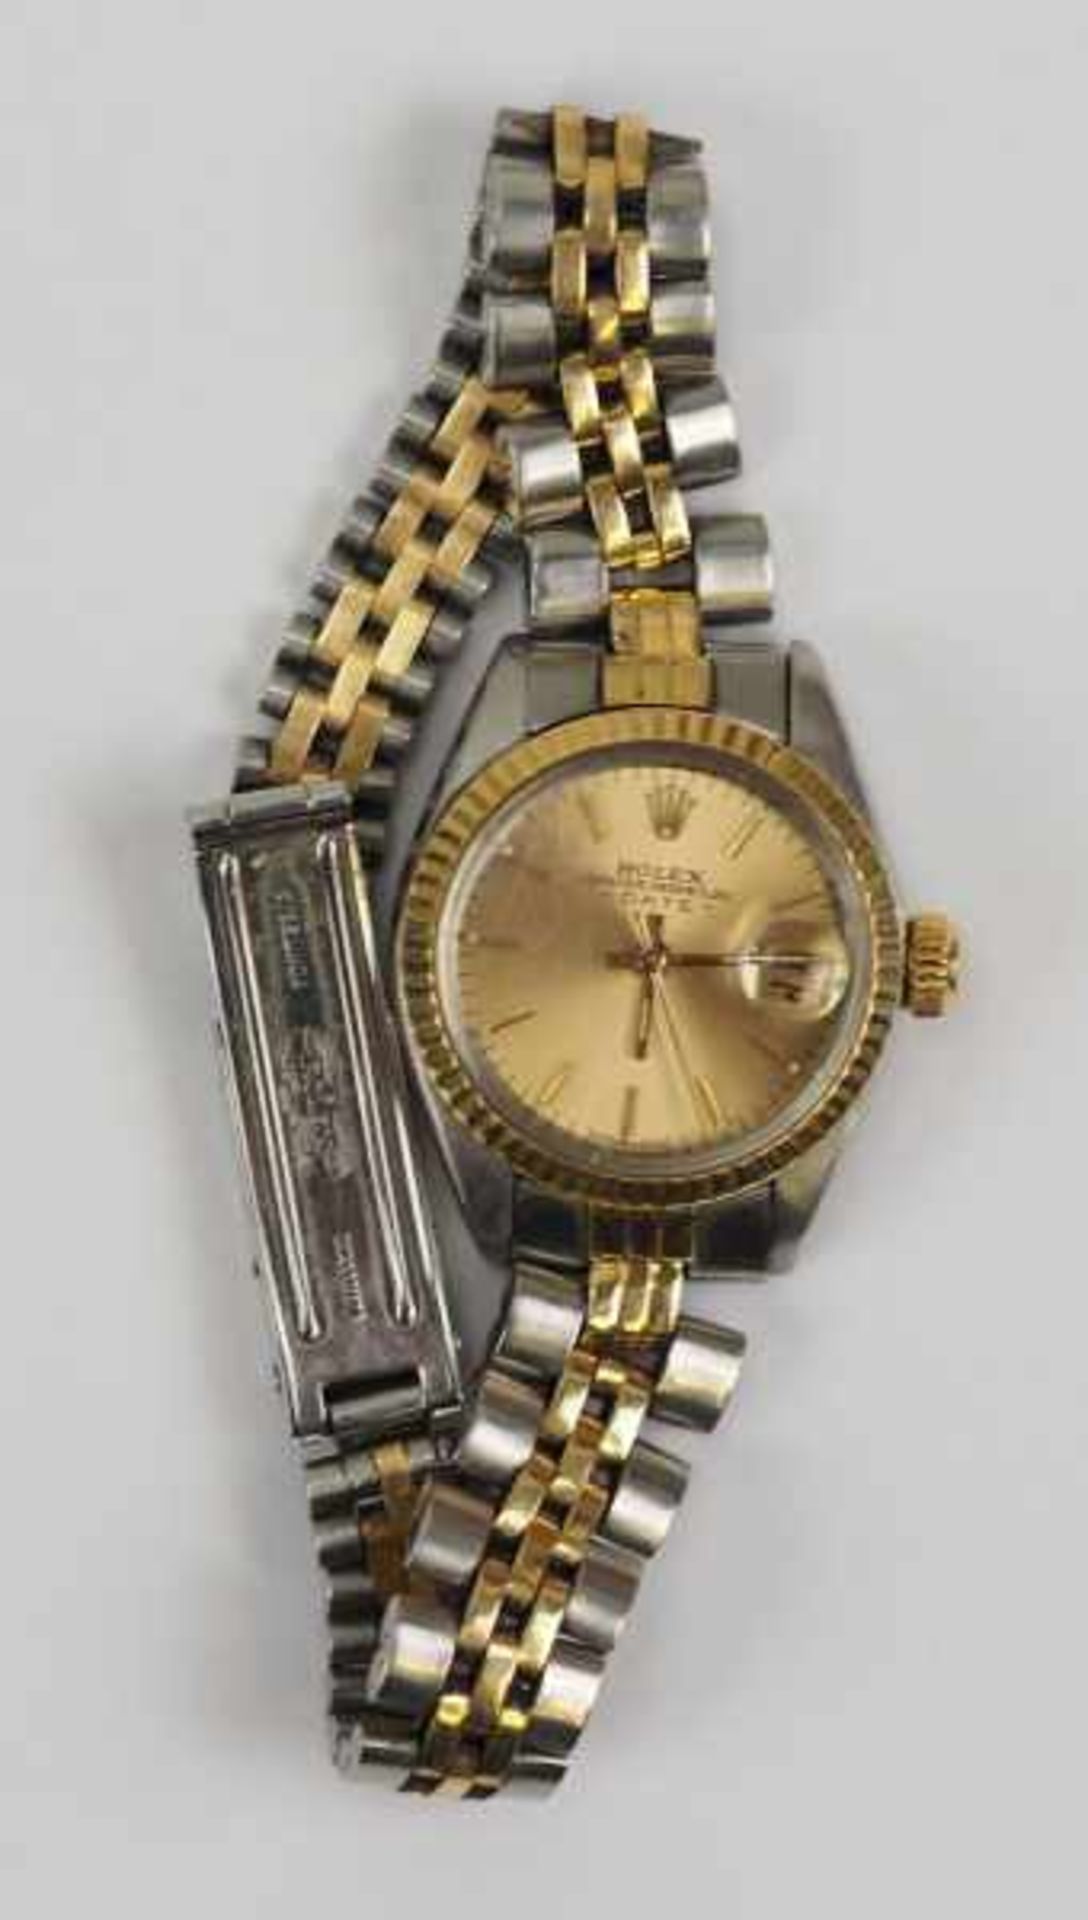 7.5.) UhrenRolex - Damenuhr Oyster Perpetual Date.Stahl-Gold, mit Gliederarmband, Schließe mit